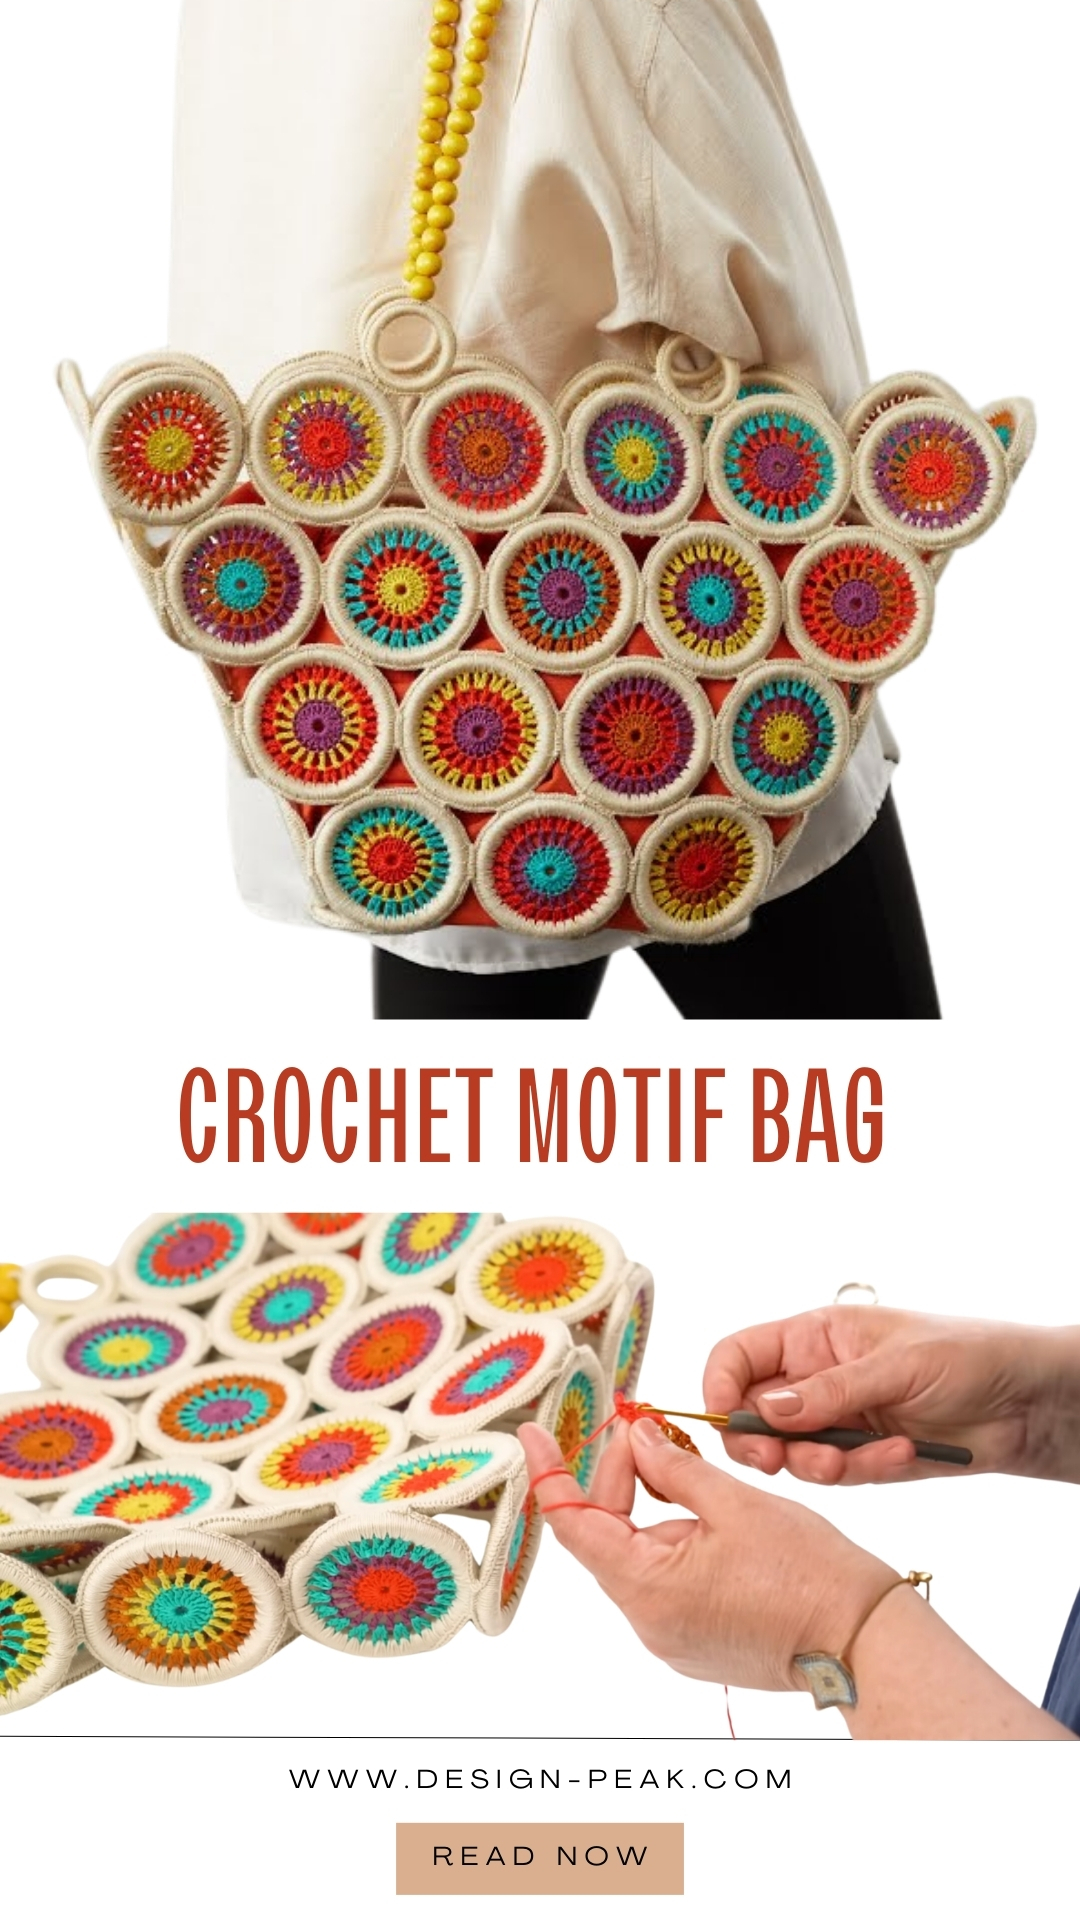 Crochet a Bag from Circle Motifs